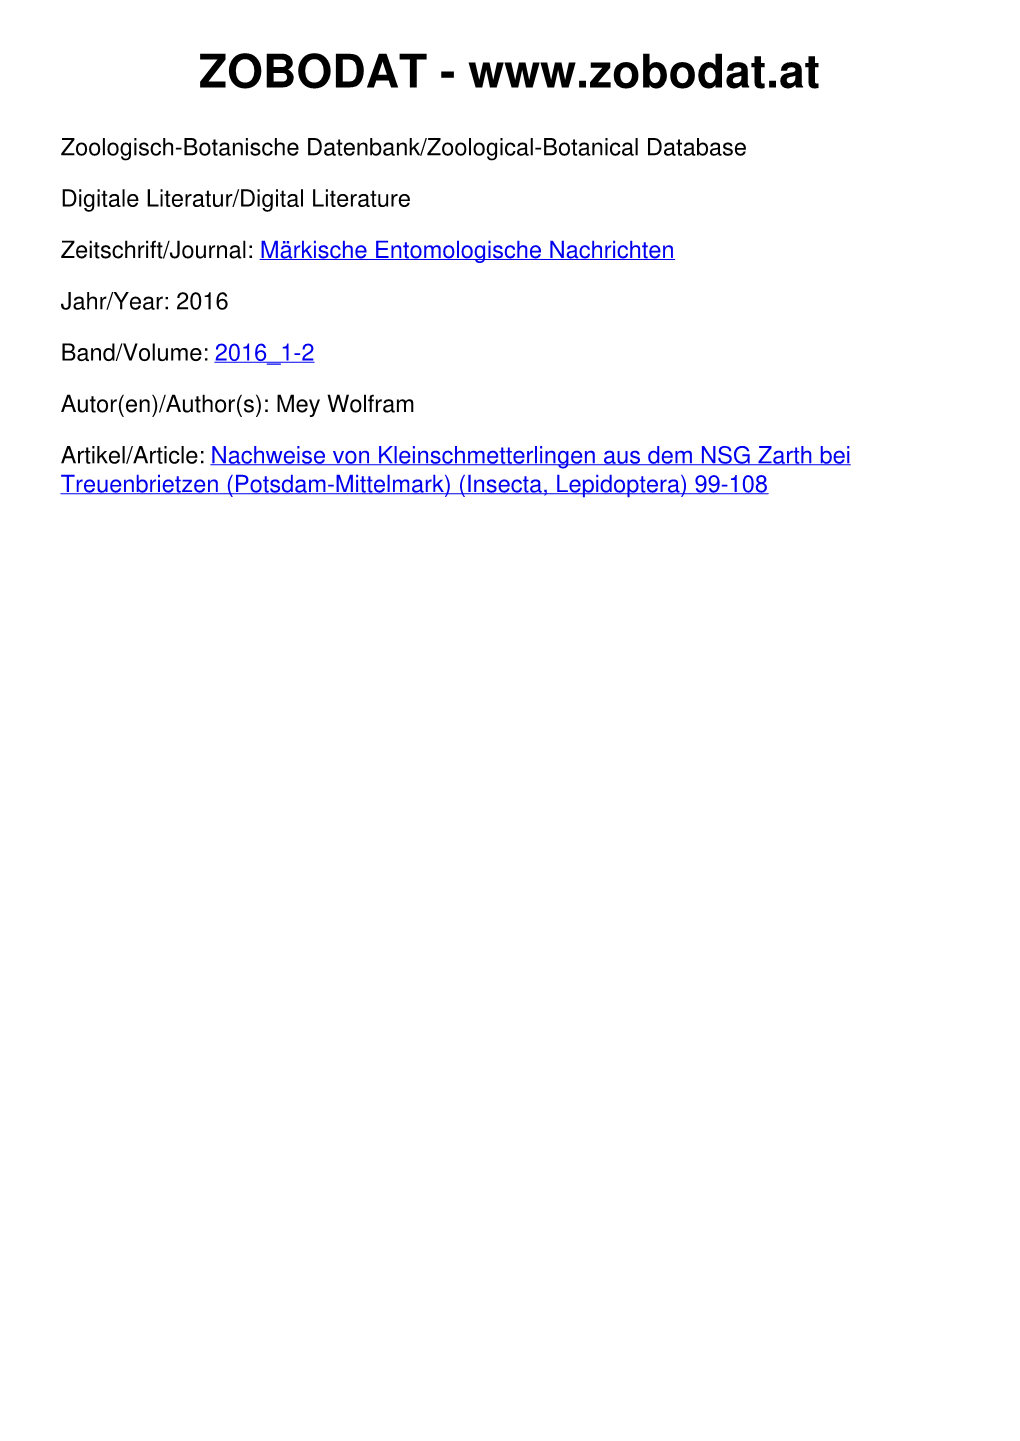 Nachweise Von Kleinschmetterlingen Aus Dem NSG Zarth Bei Treuenbrietzen (Potsdam-Mittelmark) (Insecta, Lepidoptera) 99-108 Märkische Ent